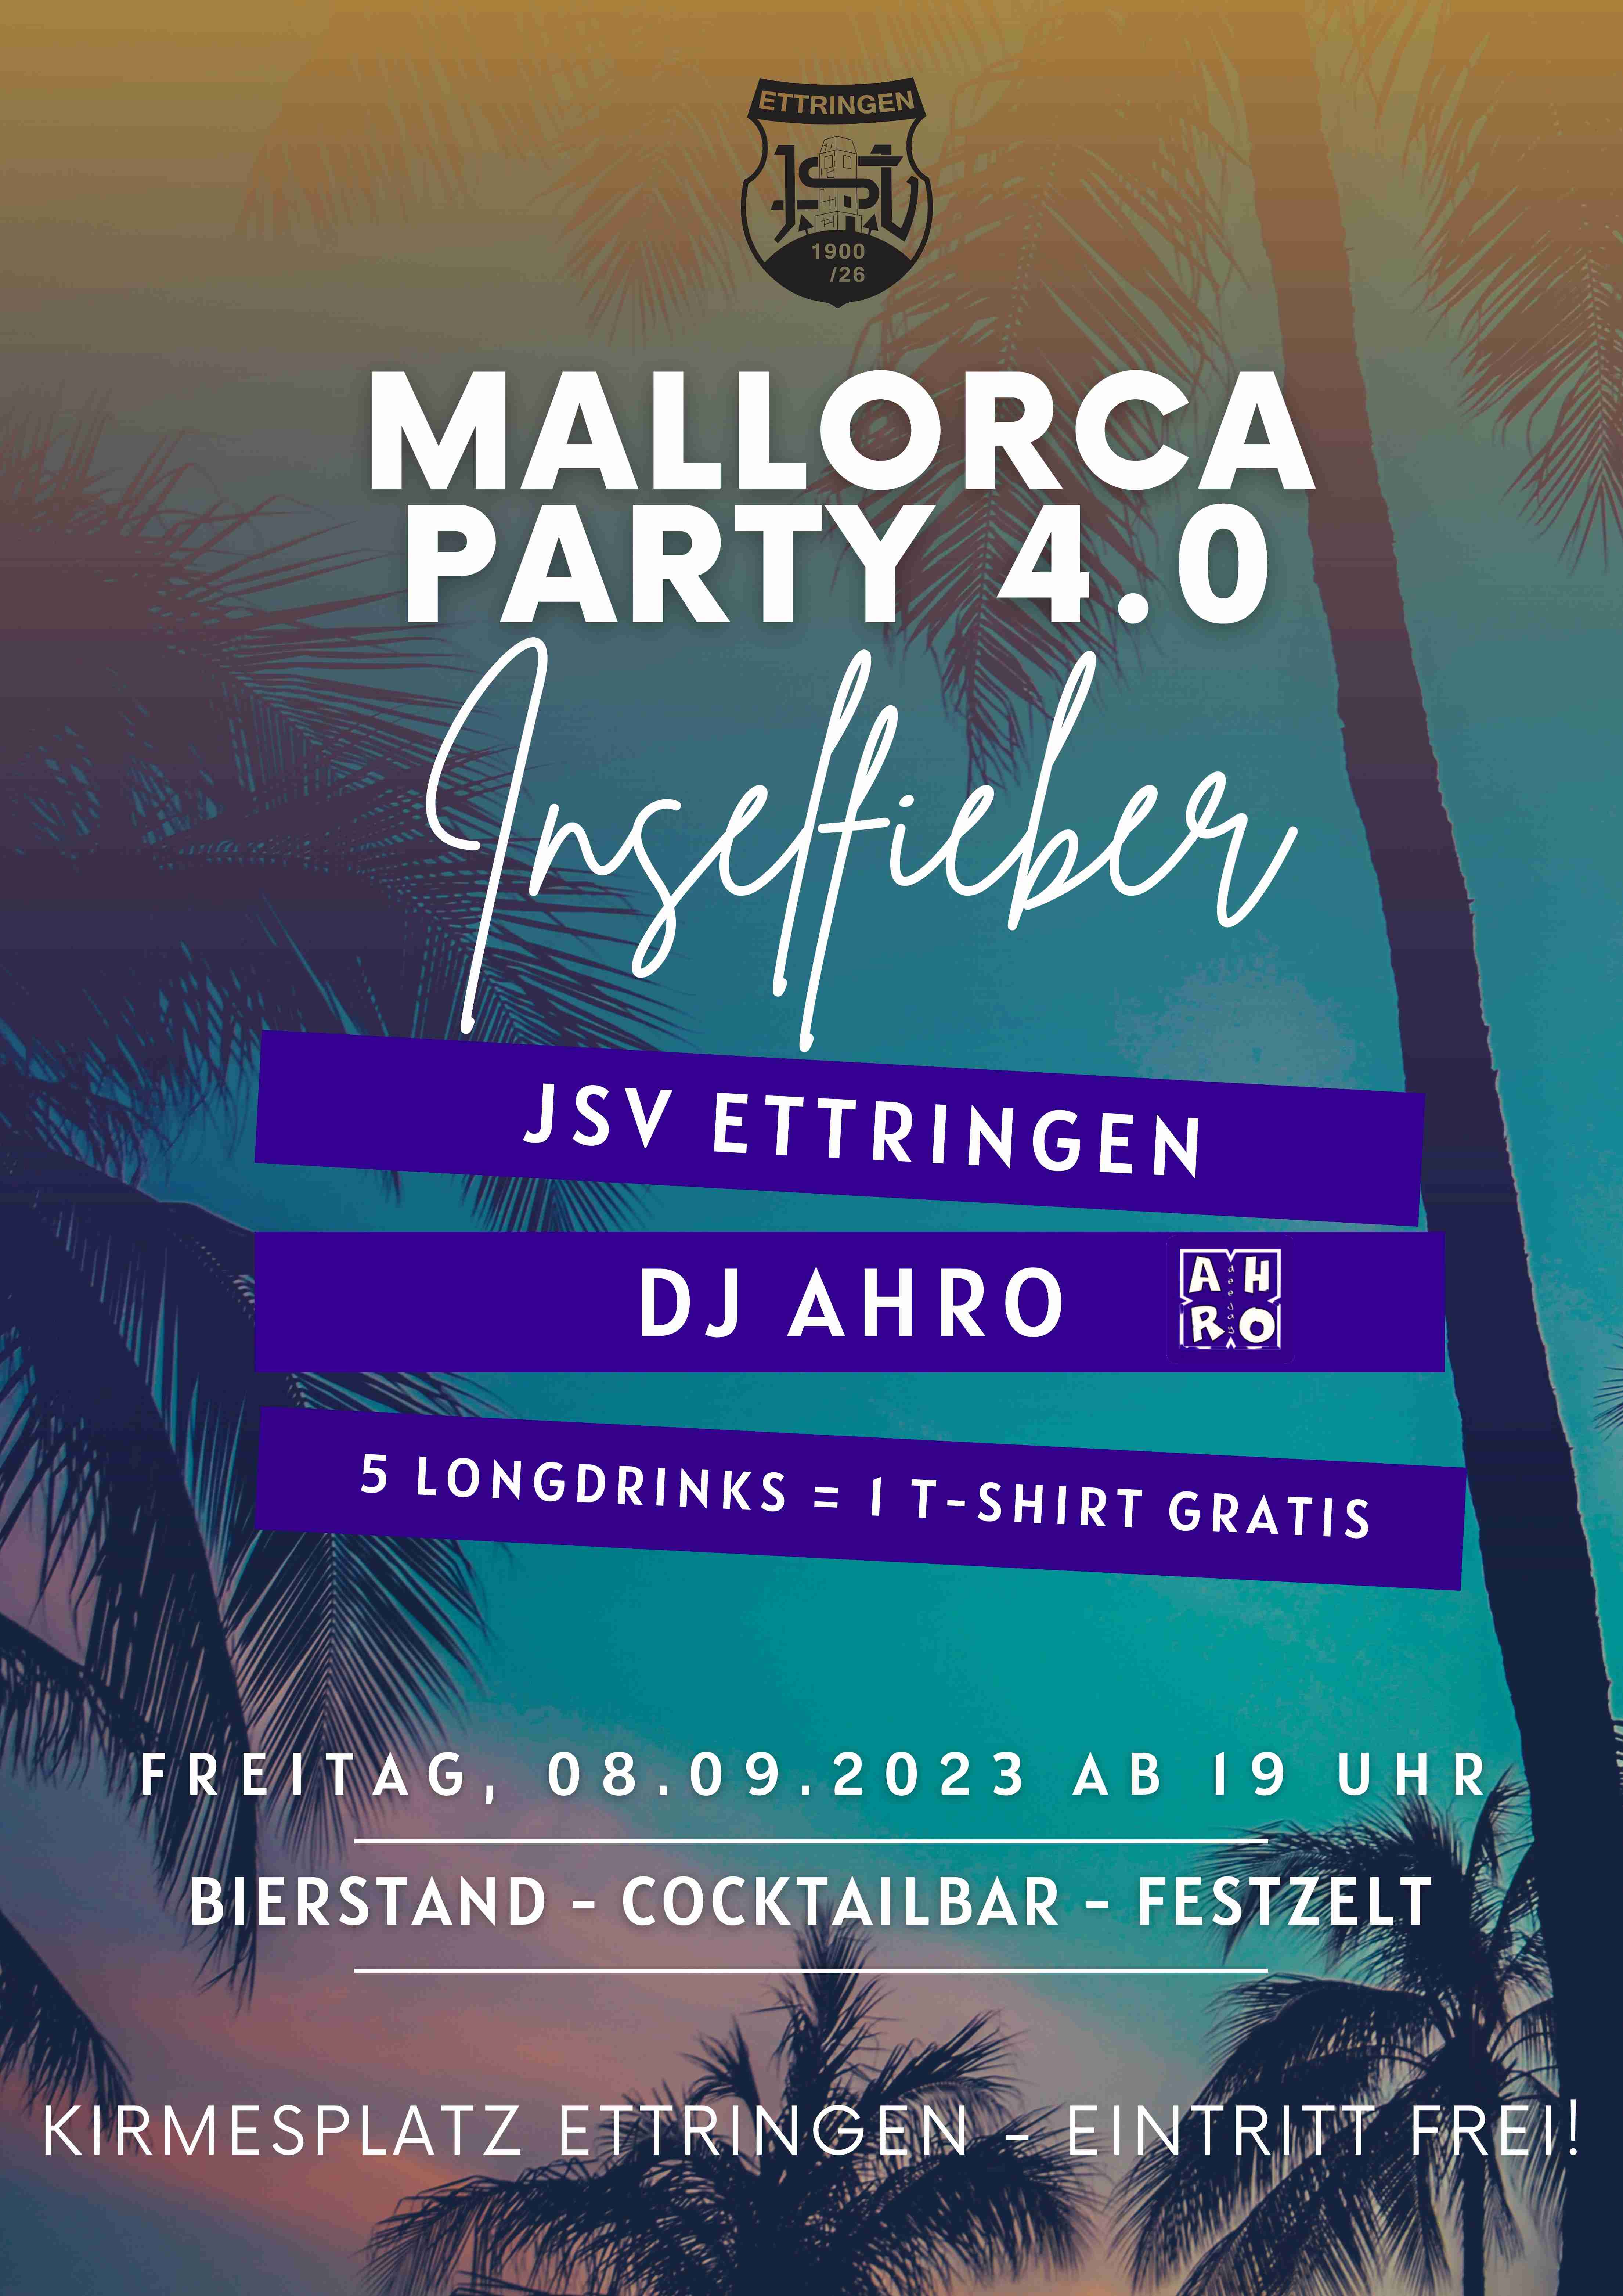 Mallorca Party 4.0